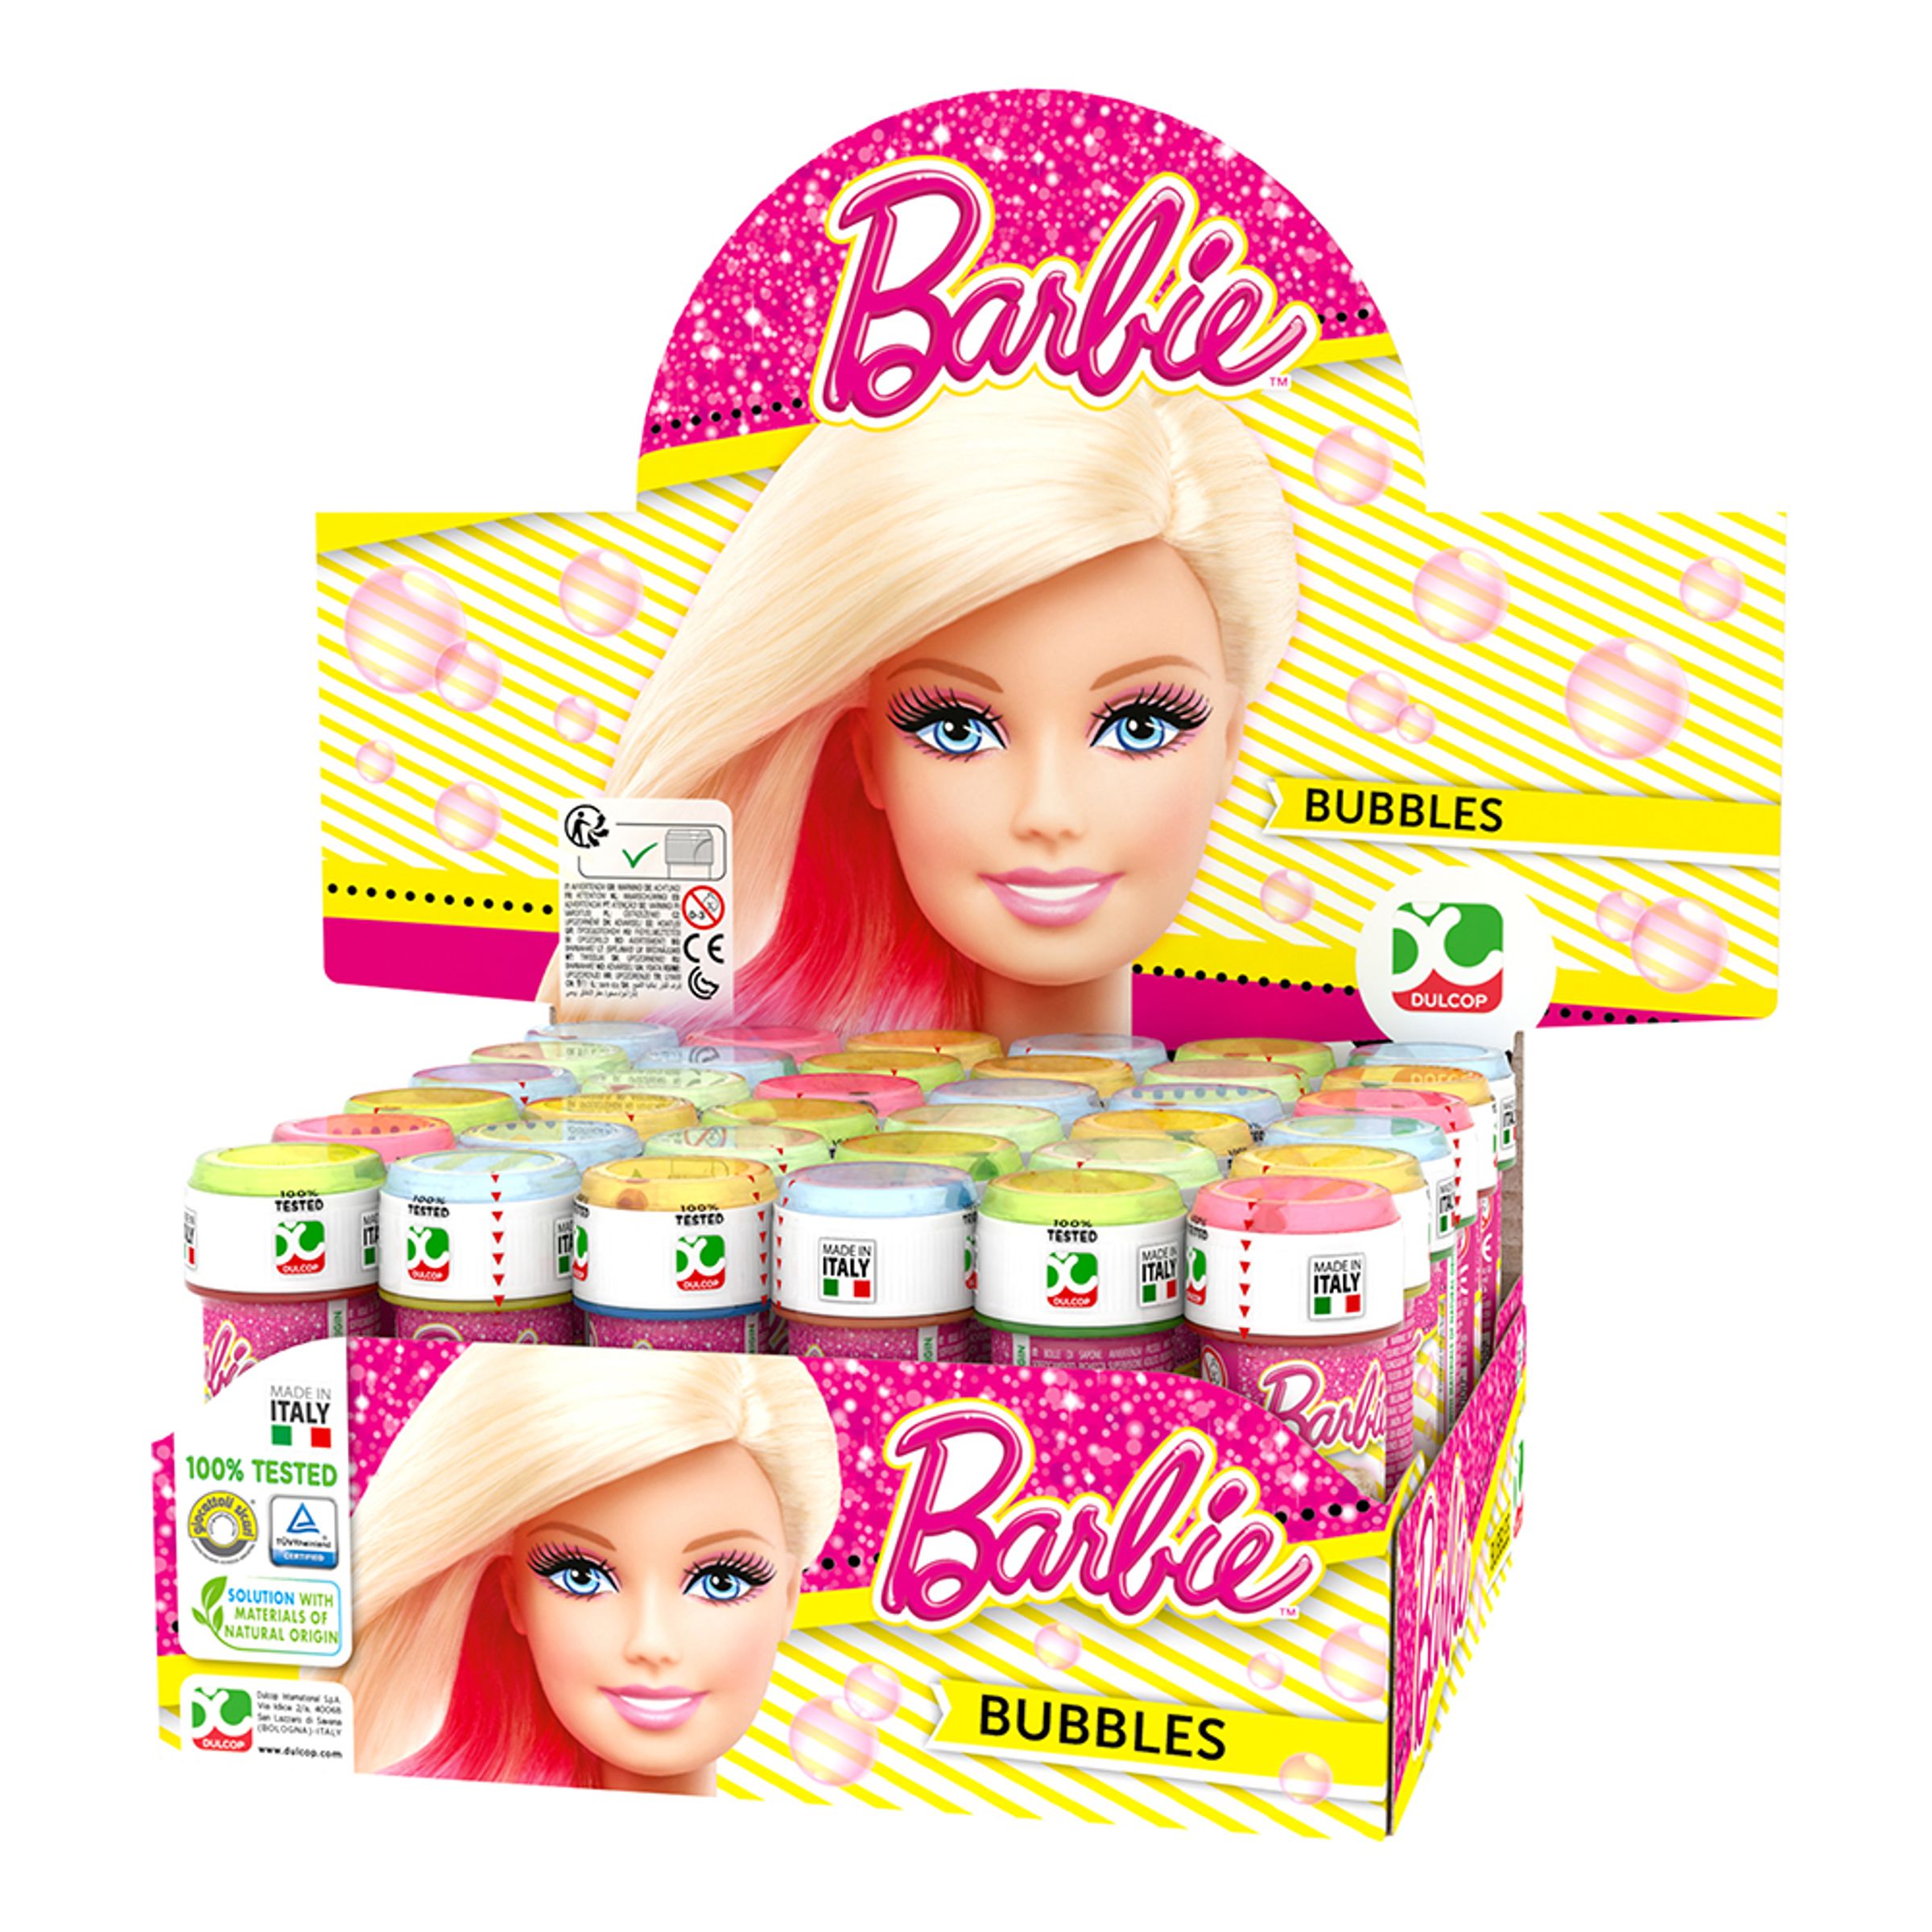 Såpbubblor Barbie - 36-pack